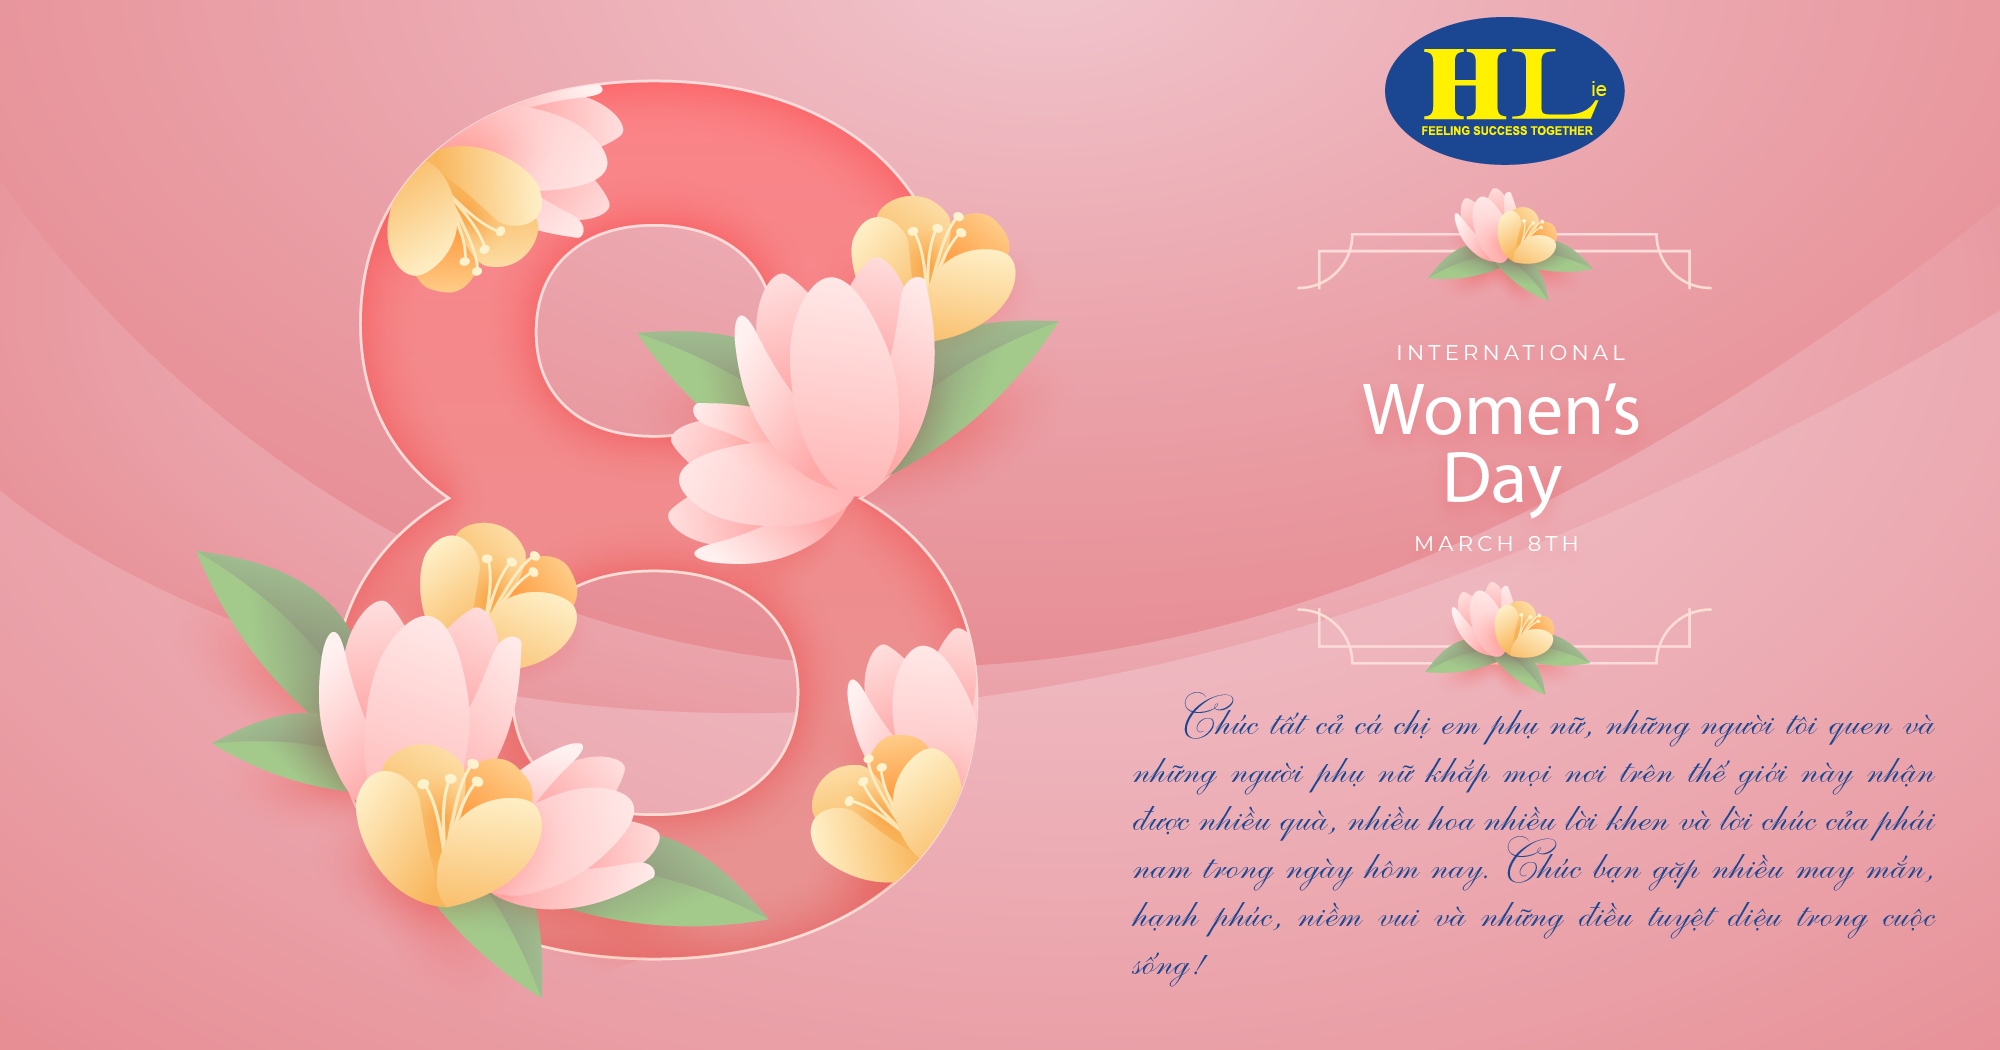 HLie - Chúc mừng ngày Quốc tế Phụ nữ 8/3 - Kỷ niệm 113 năm ngày Quốc tế Phụ nữ